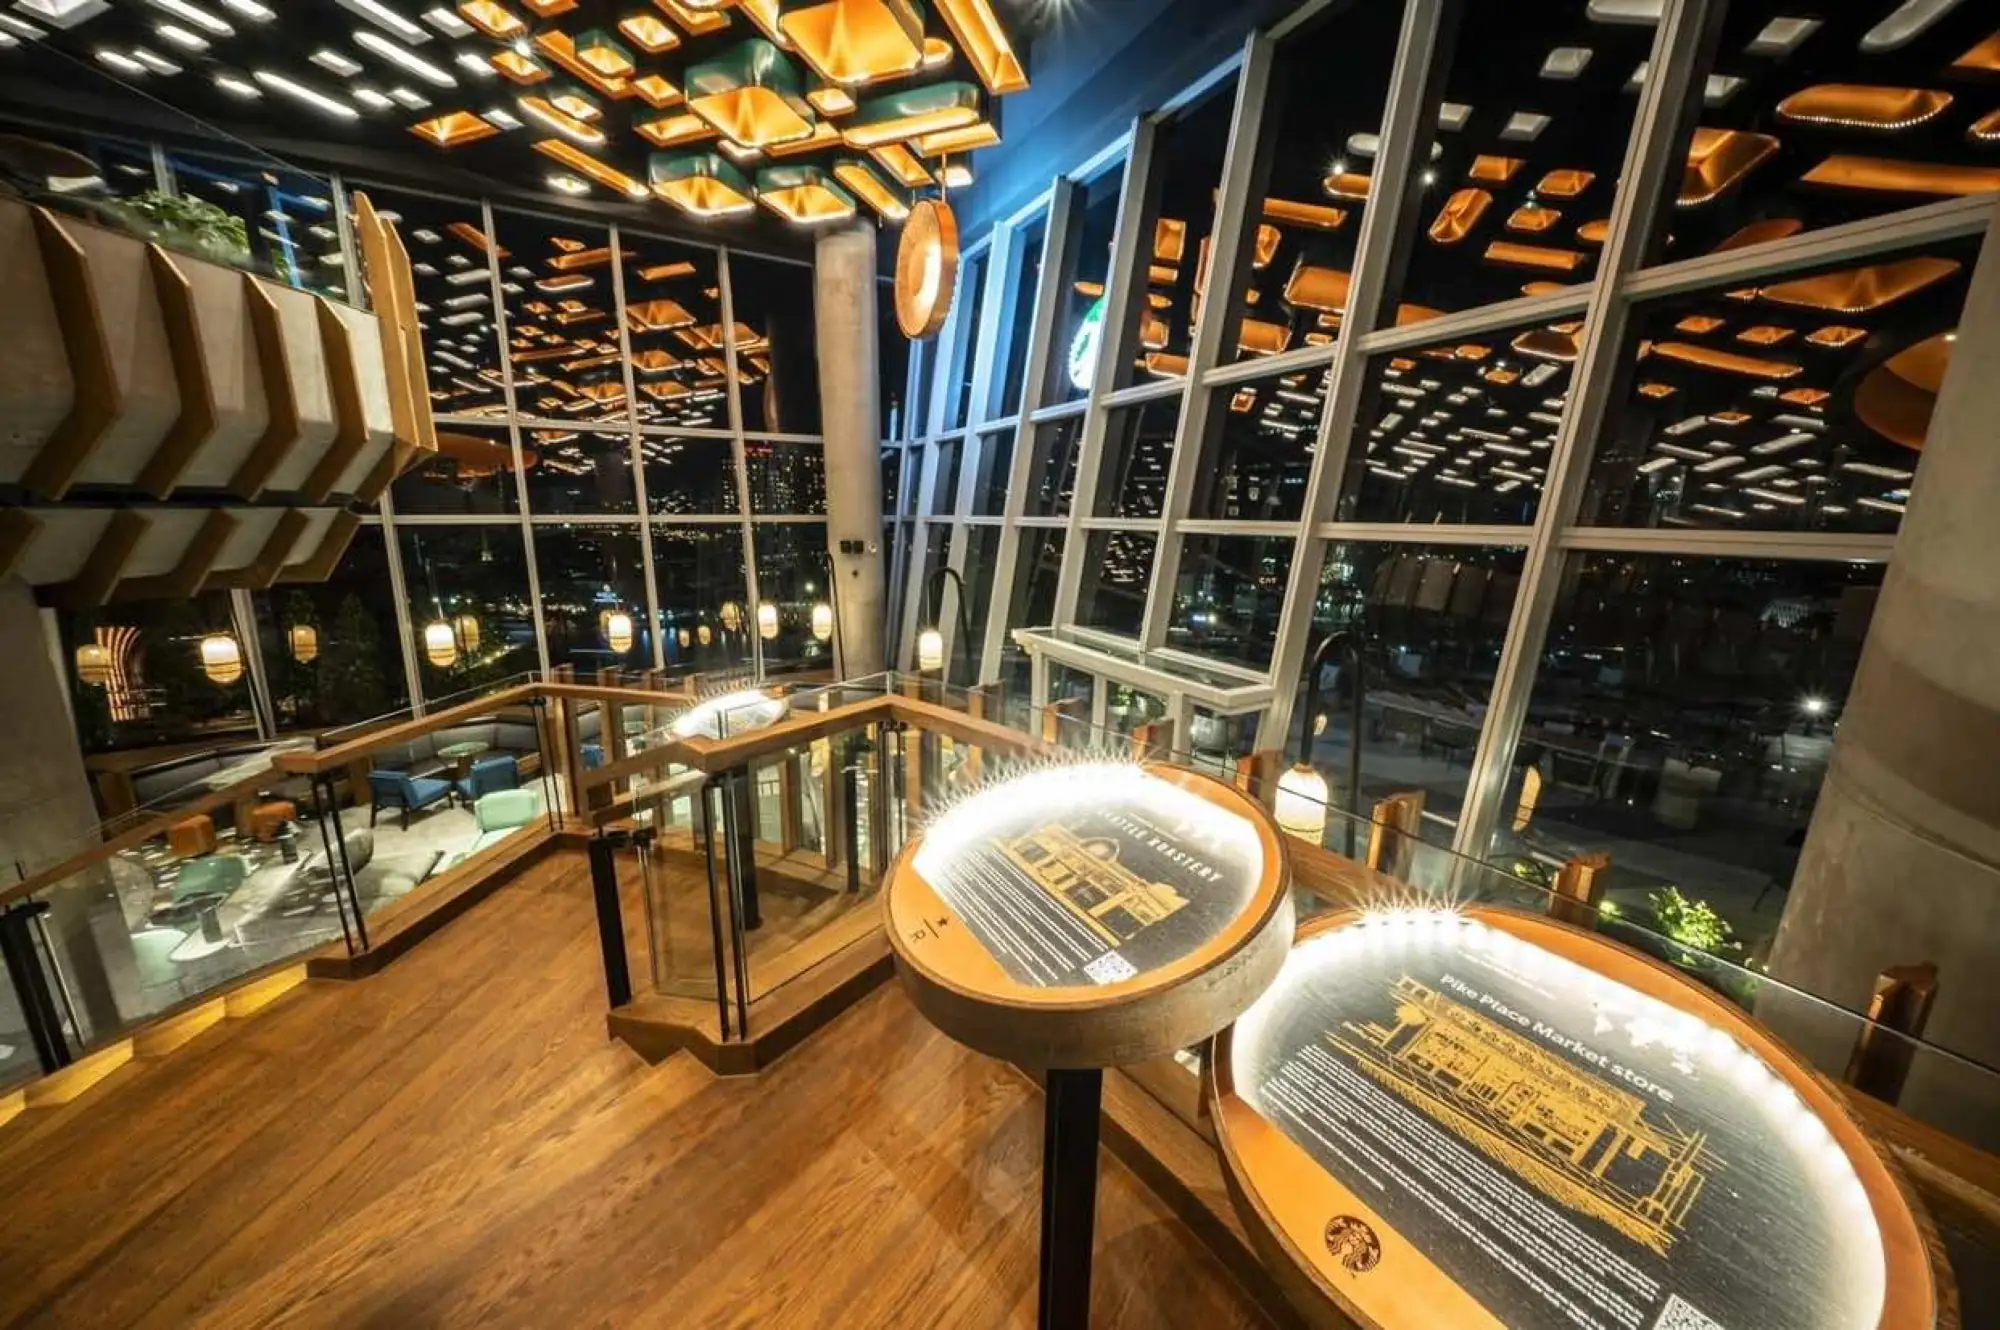 星巴克曼谷ICONSIAM分店在通往2楼的旋转楼梯展示来自各地区的咖啡故事（图片来源：ICONSIAM暹罗天地提供）